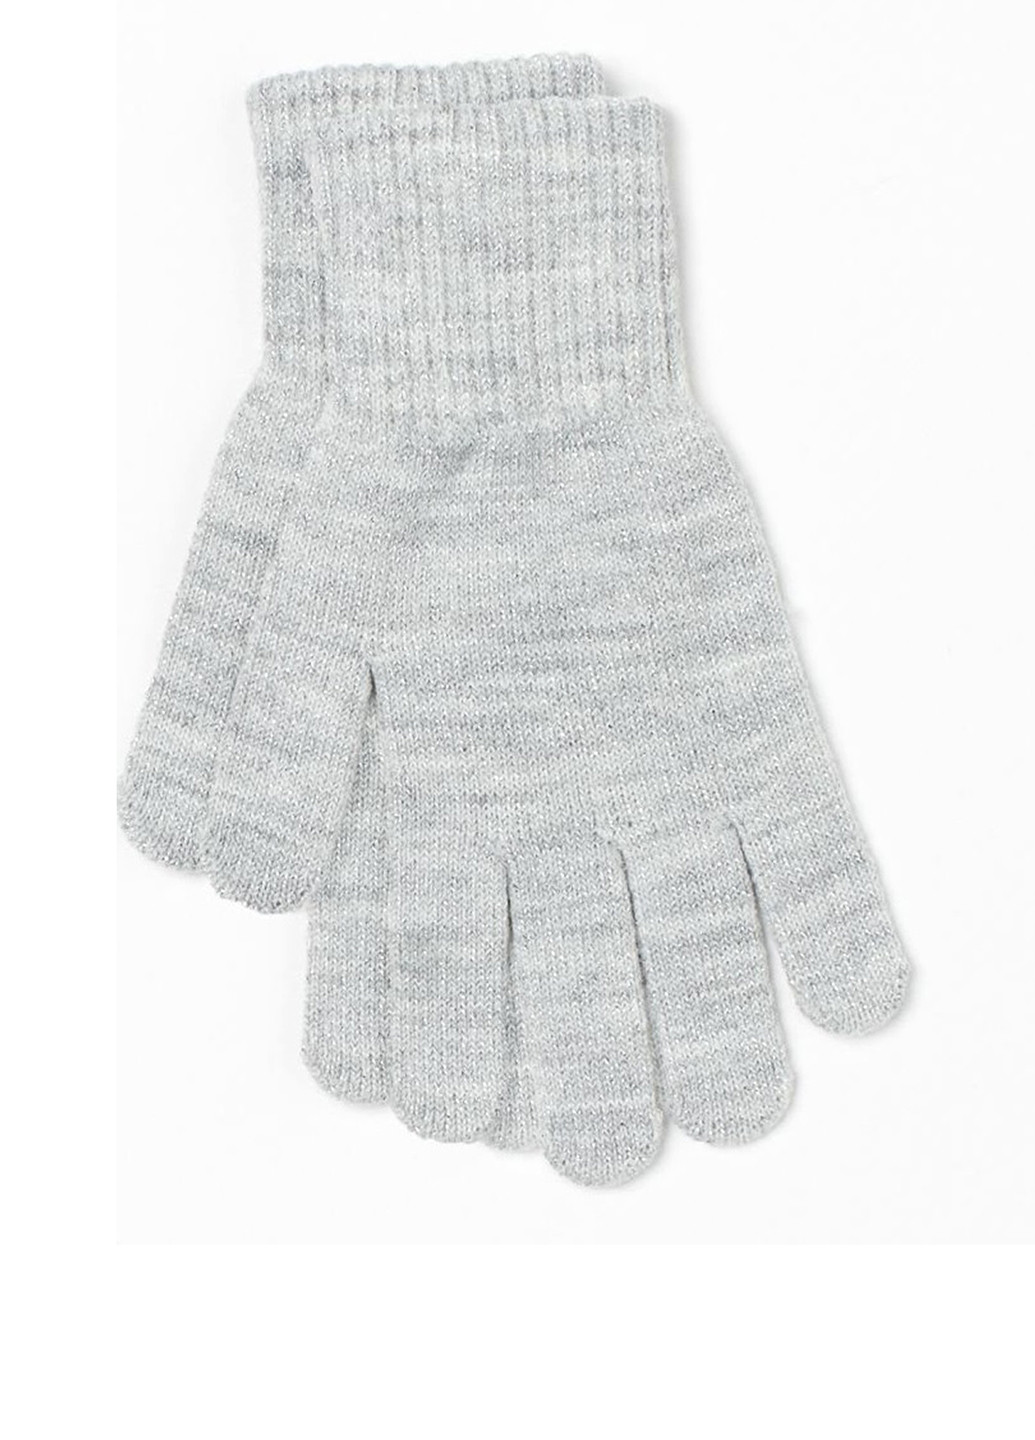 Перчатки H&M меланжи светло-серые кэжуалы акрил